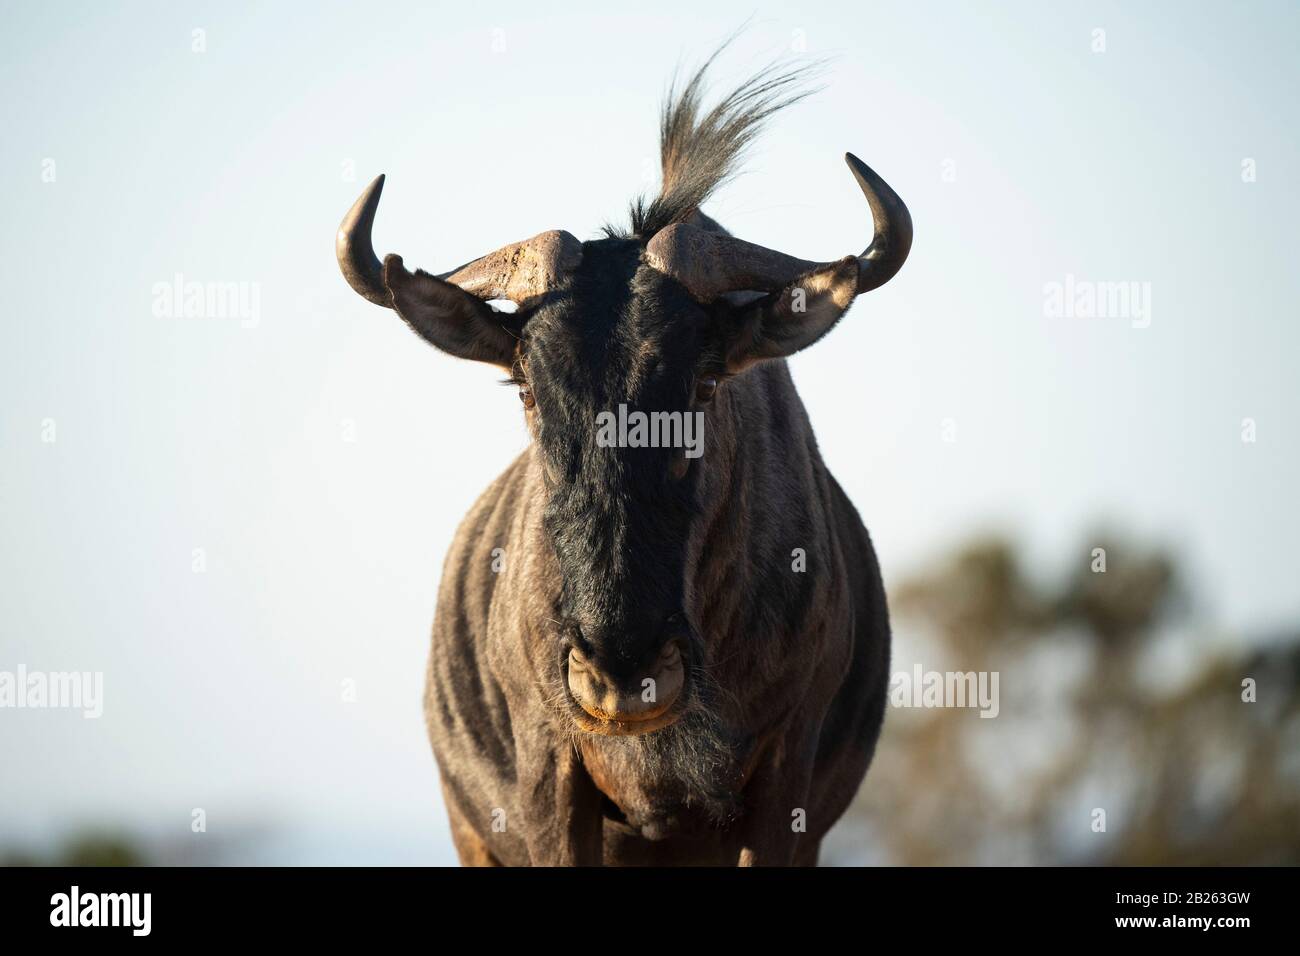 Blue wildebeest, Connochaetes taurinus, Welgevonden Game Reserve, South Africa Stock Photo